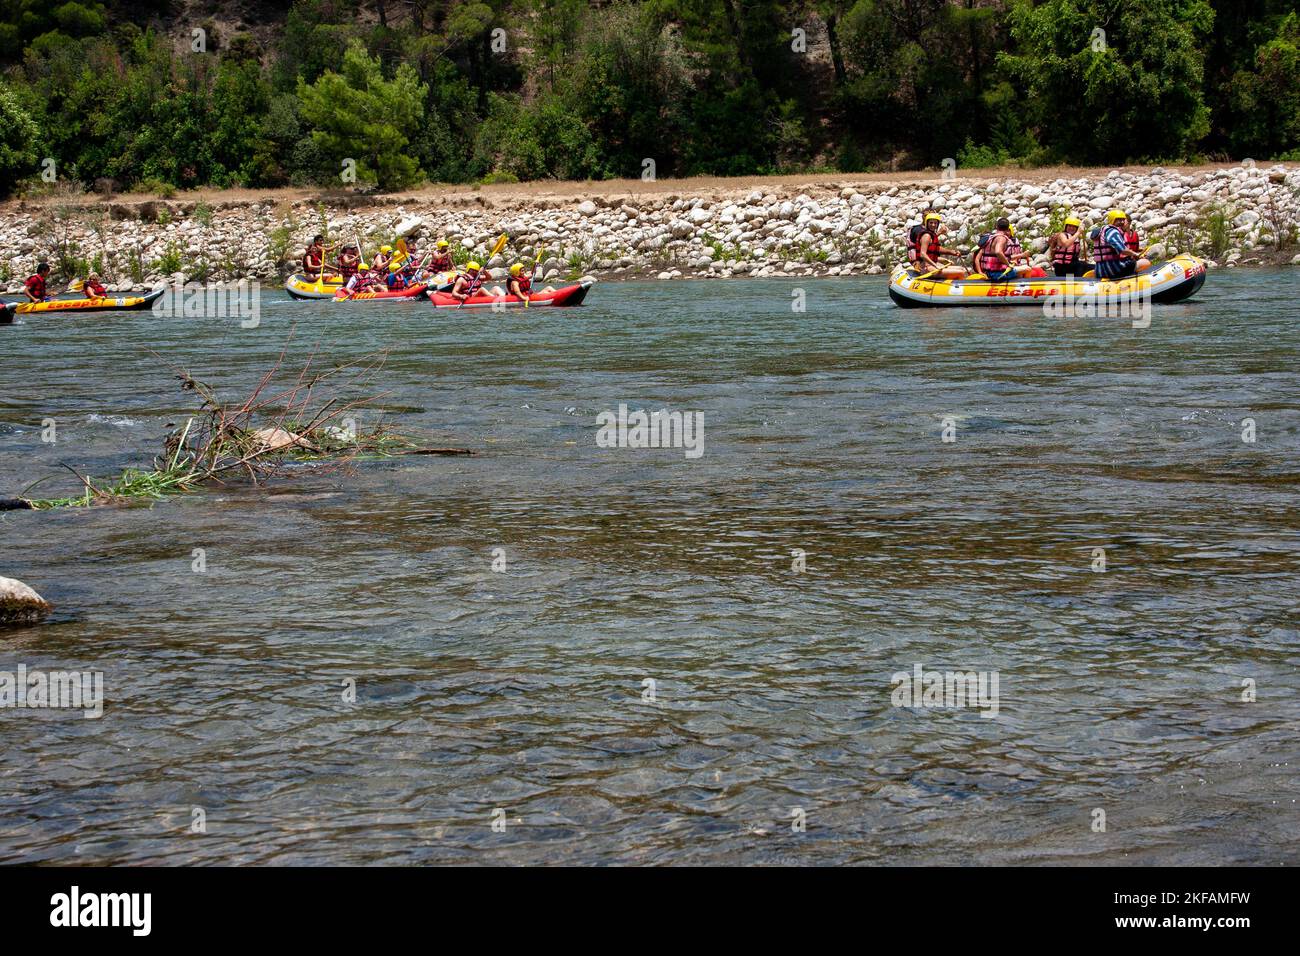 Un groupe de touristes rafting sur une rivière dans les montagnes du Taurus, Golfe d'Antalya. Péninsule anatolienne, Anatolie, Turquie Banque D'Images